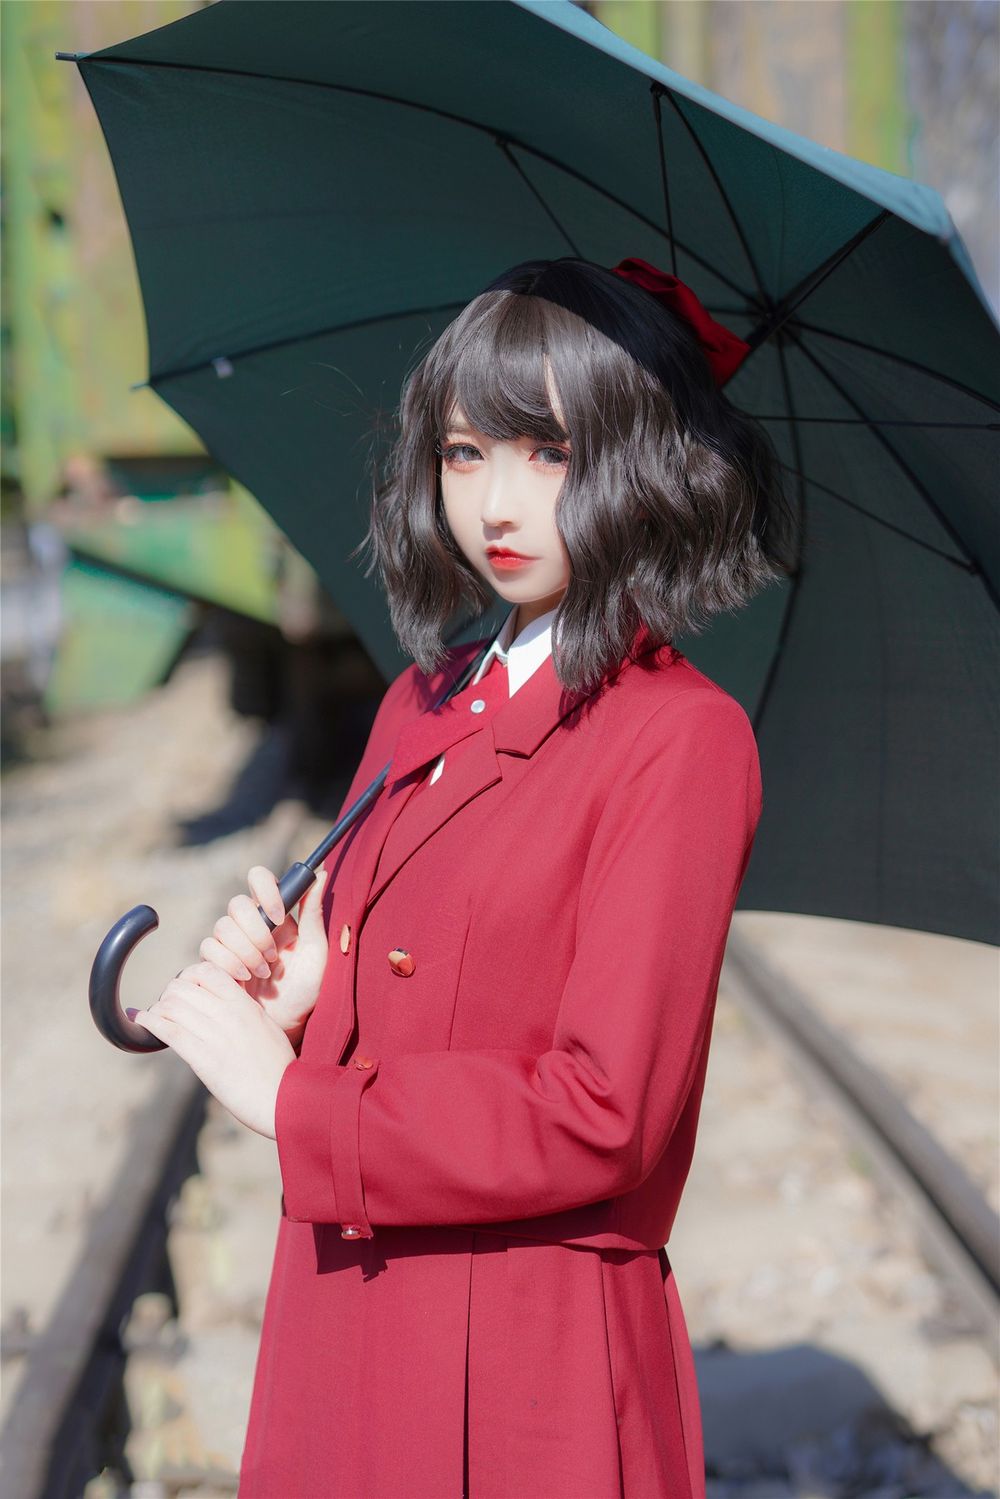 清纯美少女户外太阳伞下红色JK裙微卷短发迷人写真